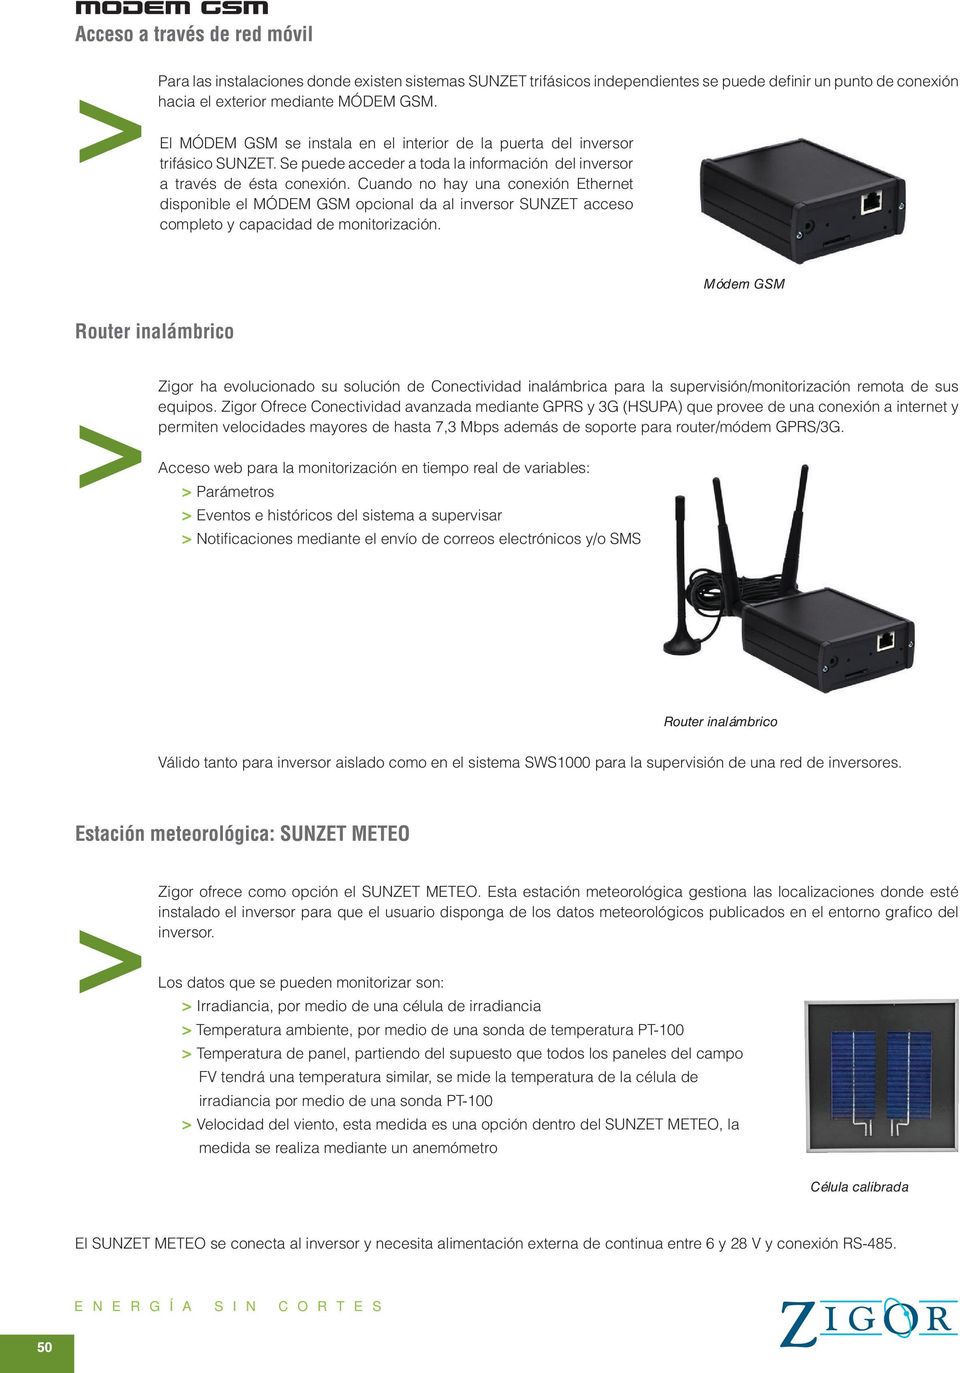 Cuando no hay una conexión Ethernet disponible el MÓDEM GSM opcional da al inversor SUNZET acceso completo y capacidad de monitorización.